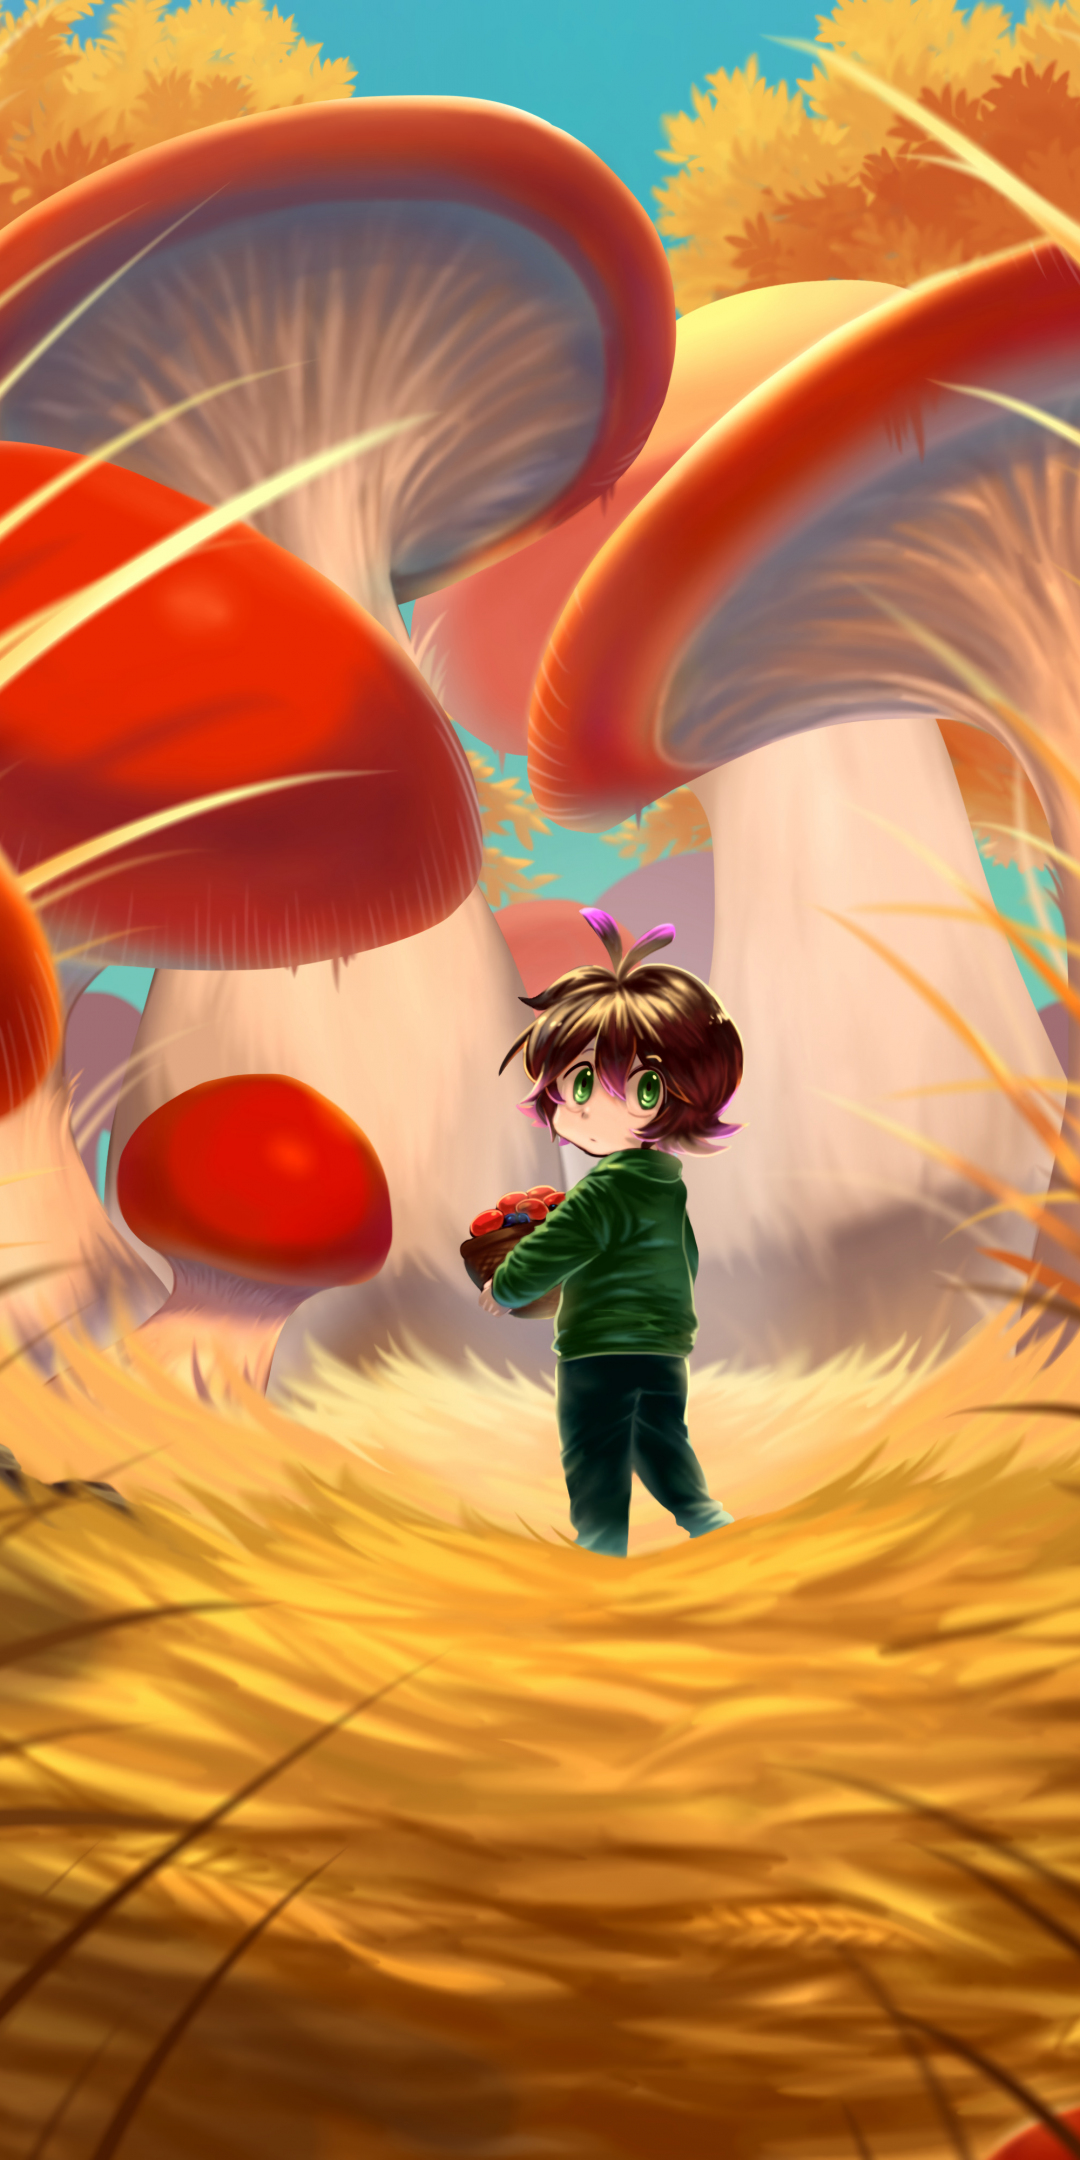 Original, anime, girl in mushrooms jungle, 1080x2160 wallpaper